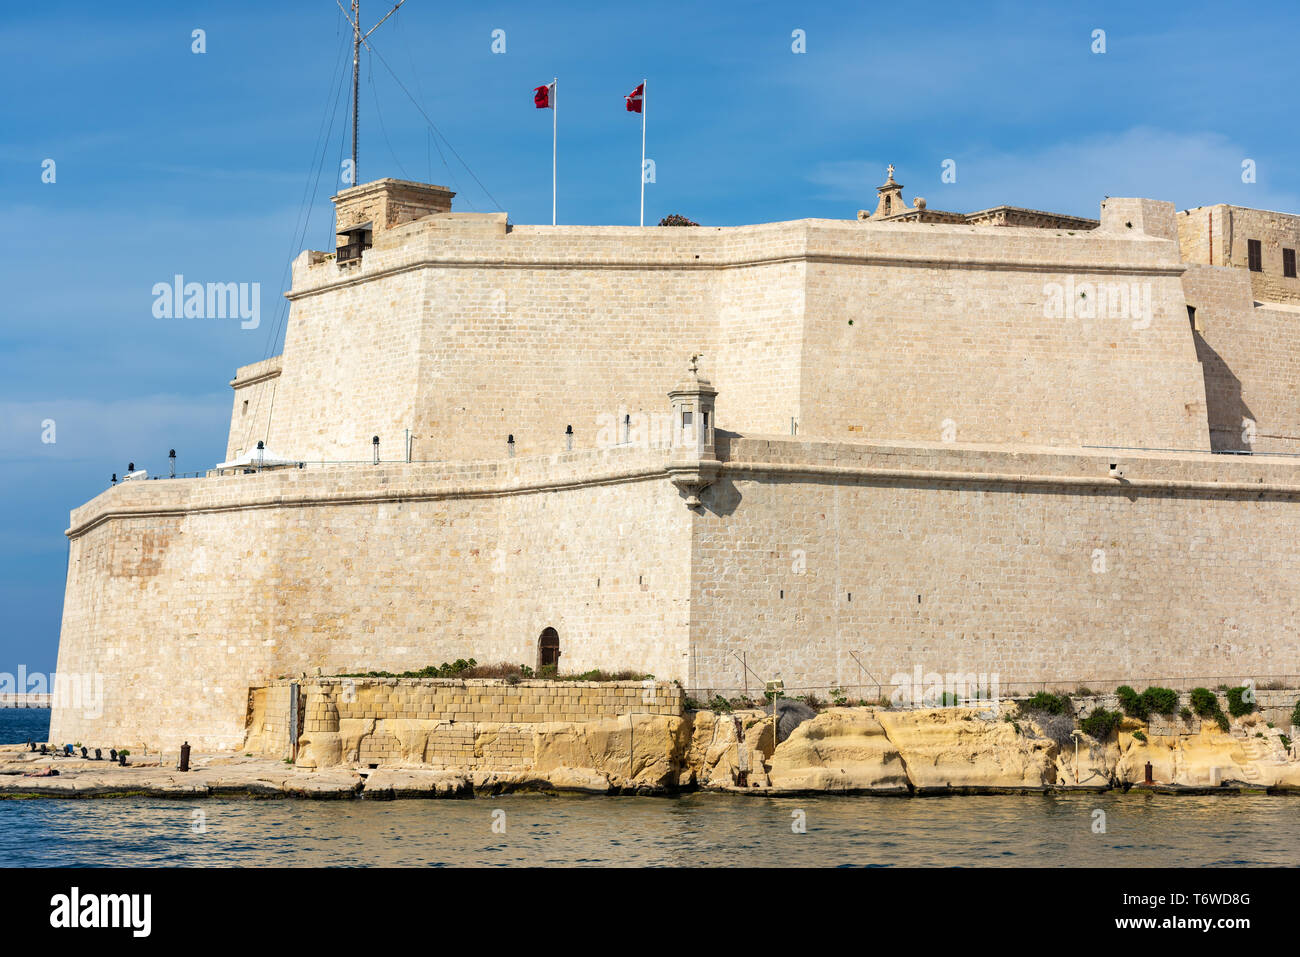 L'imposante masse du fort Saint-Ange domine le Grand Port de la Valette, Malte Banque D'Images